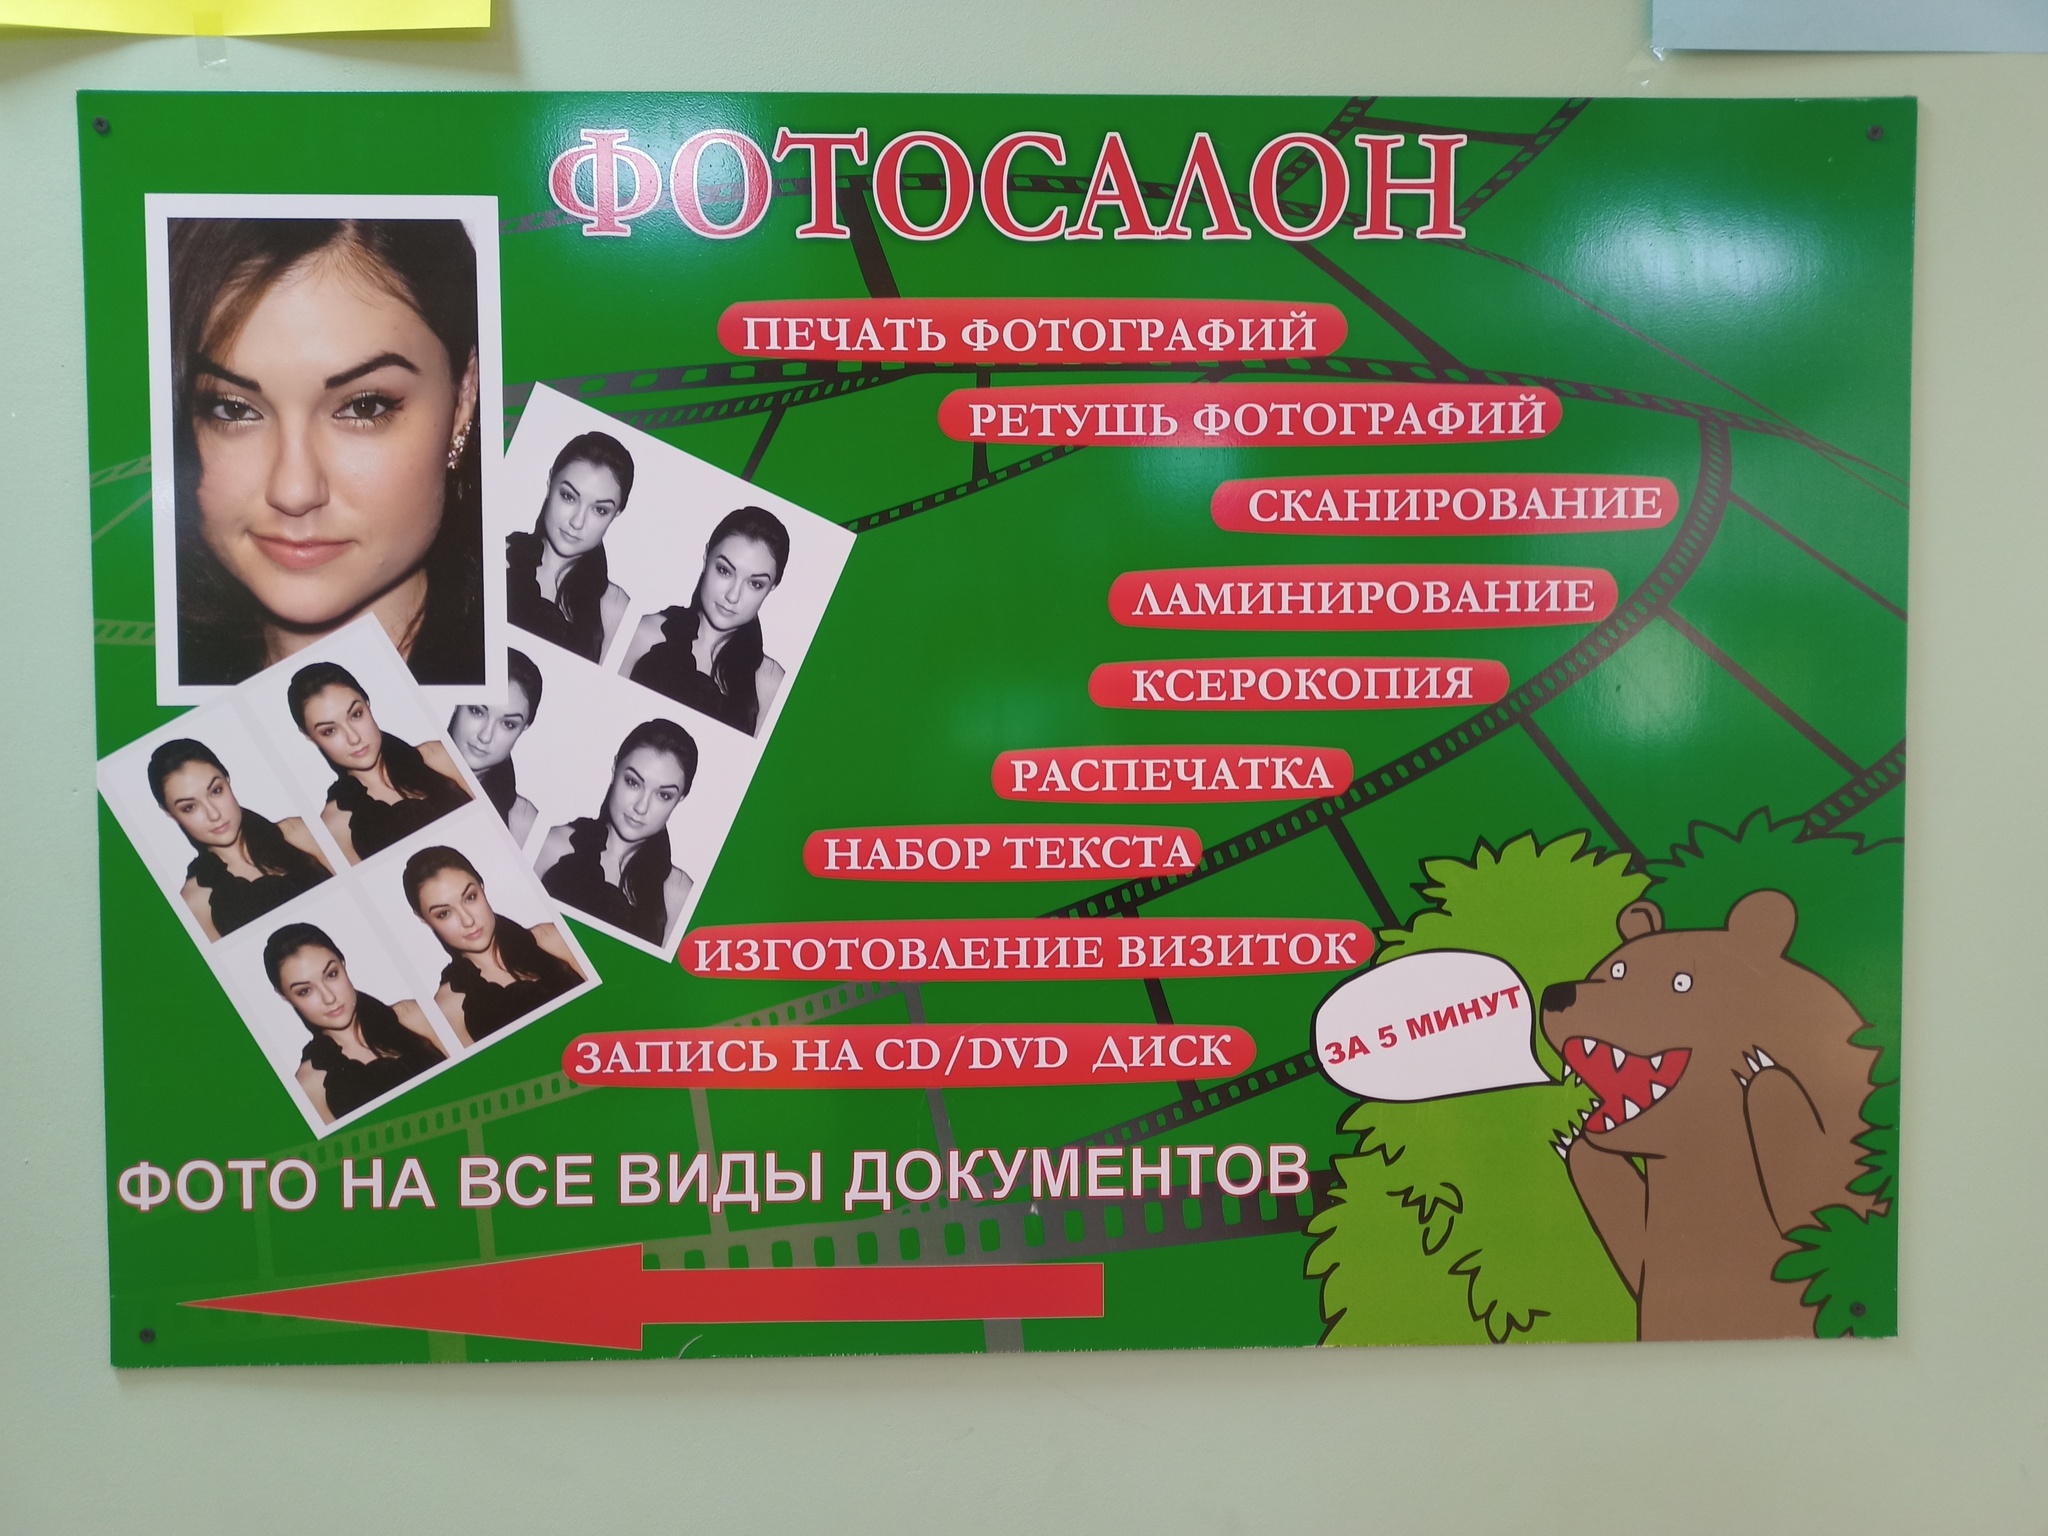 Фотосалоны, услуги фото-видео (аудио) Петропавловск